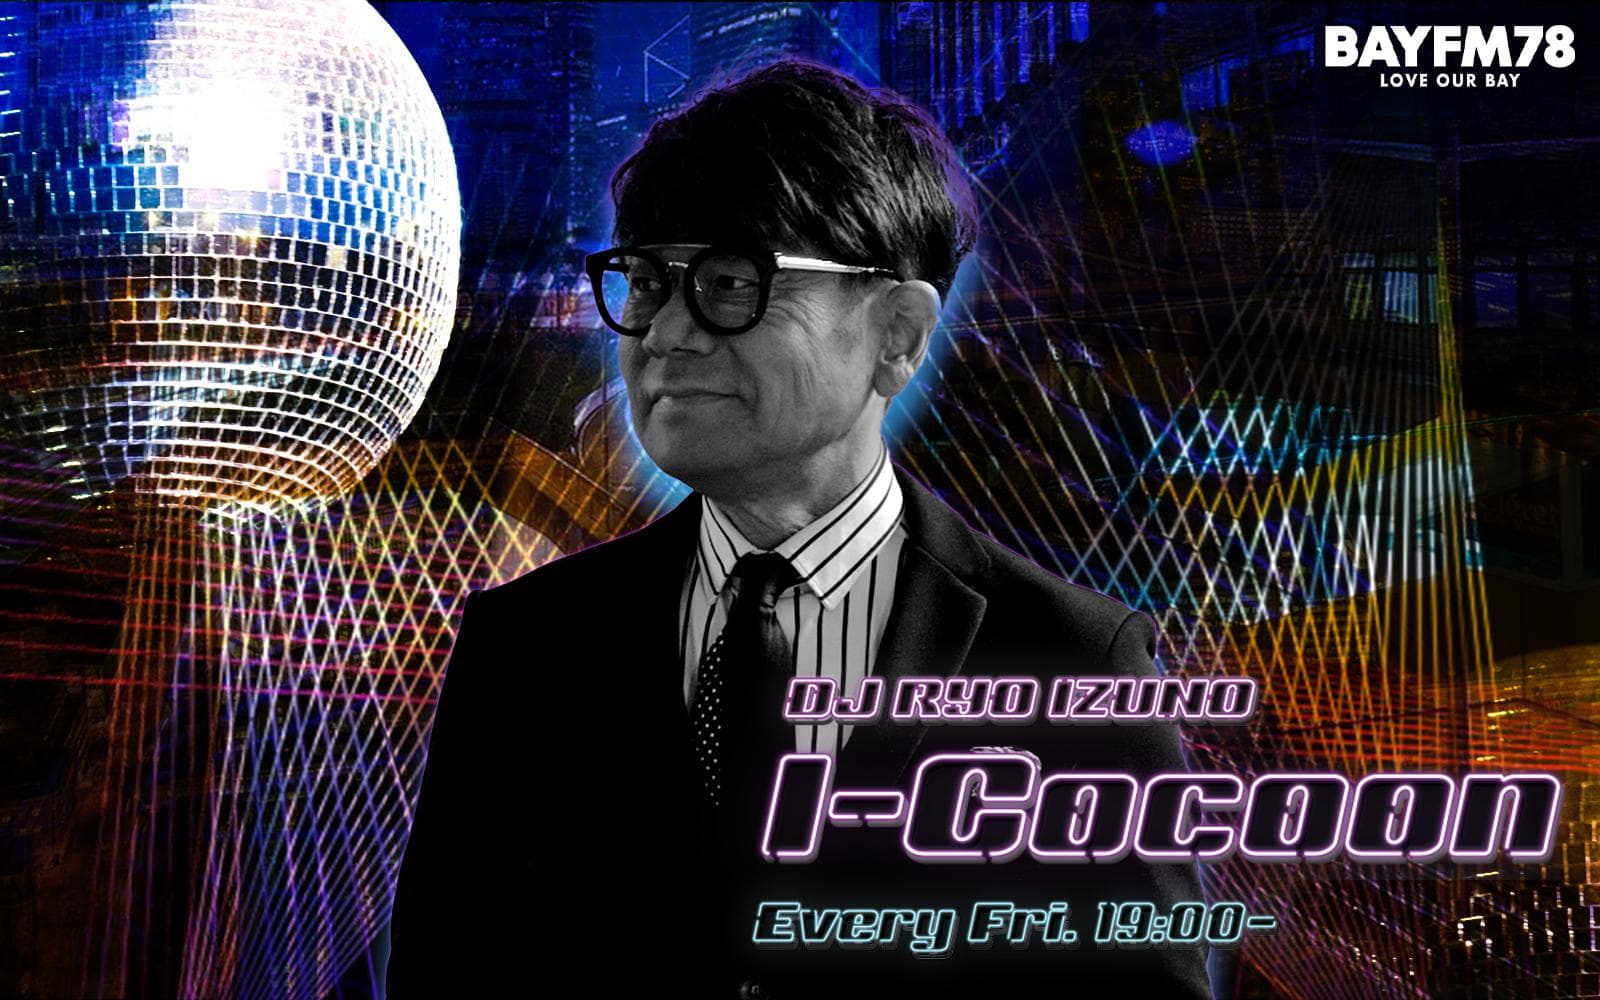 I-Cocoonのヘッダー画像